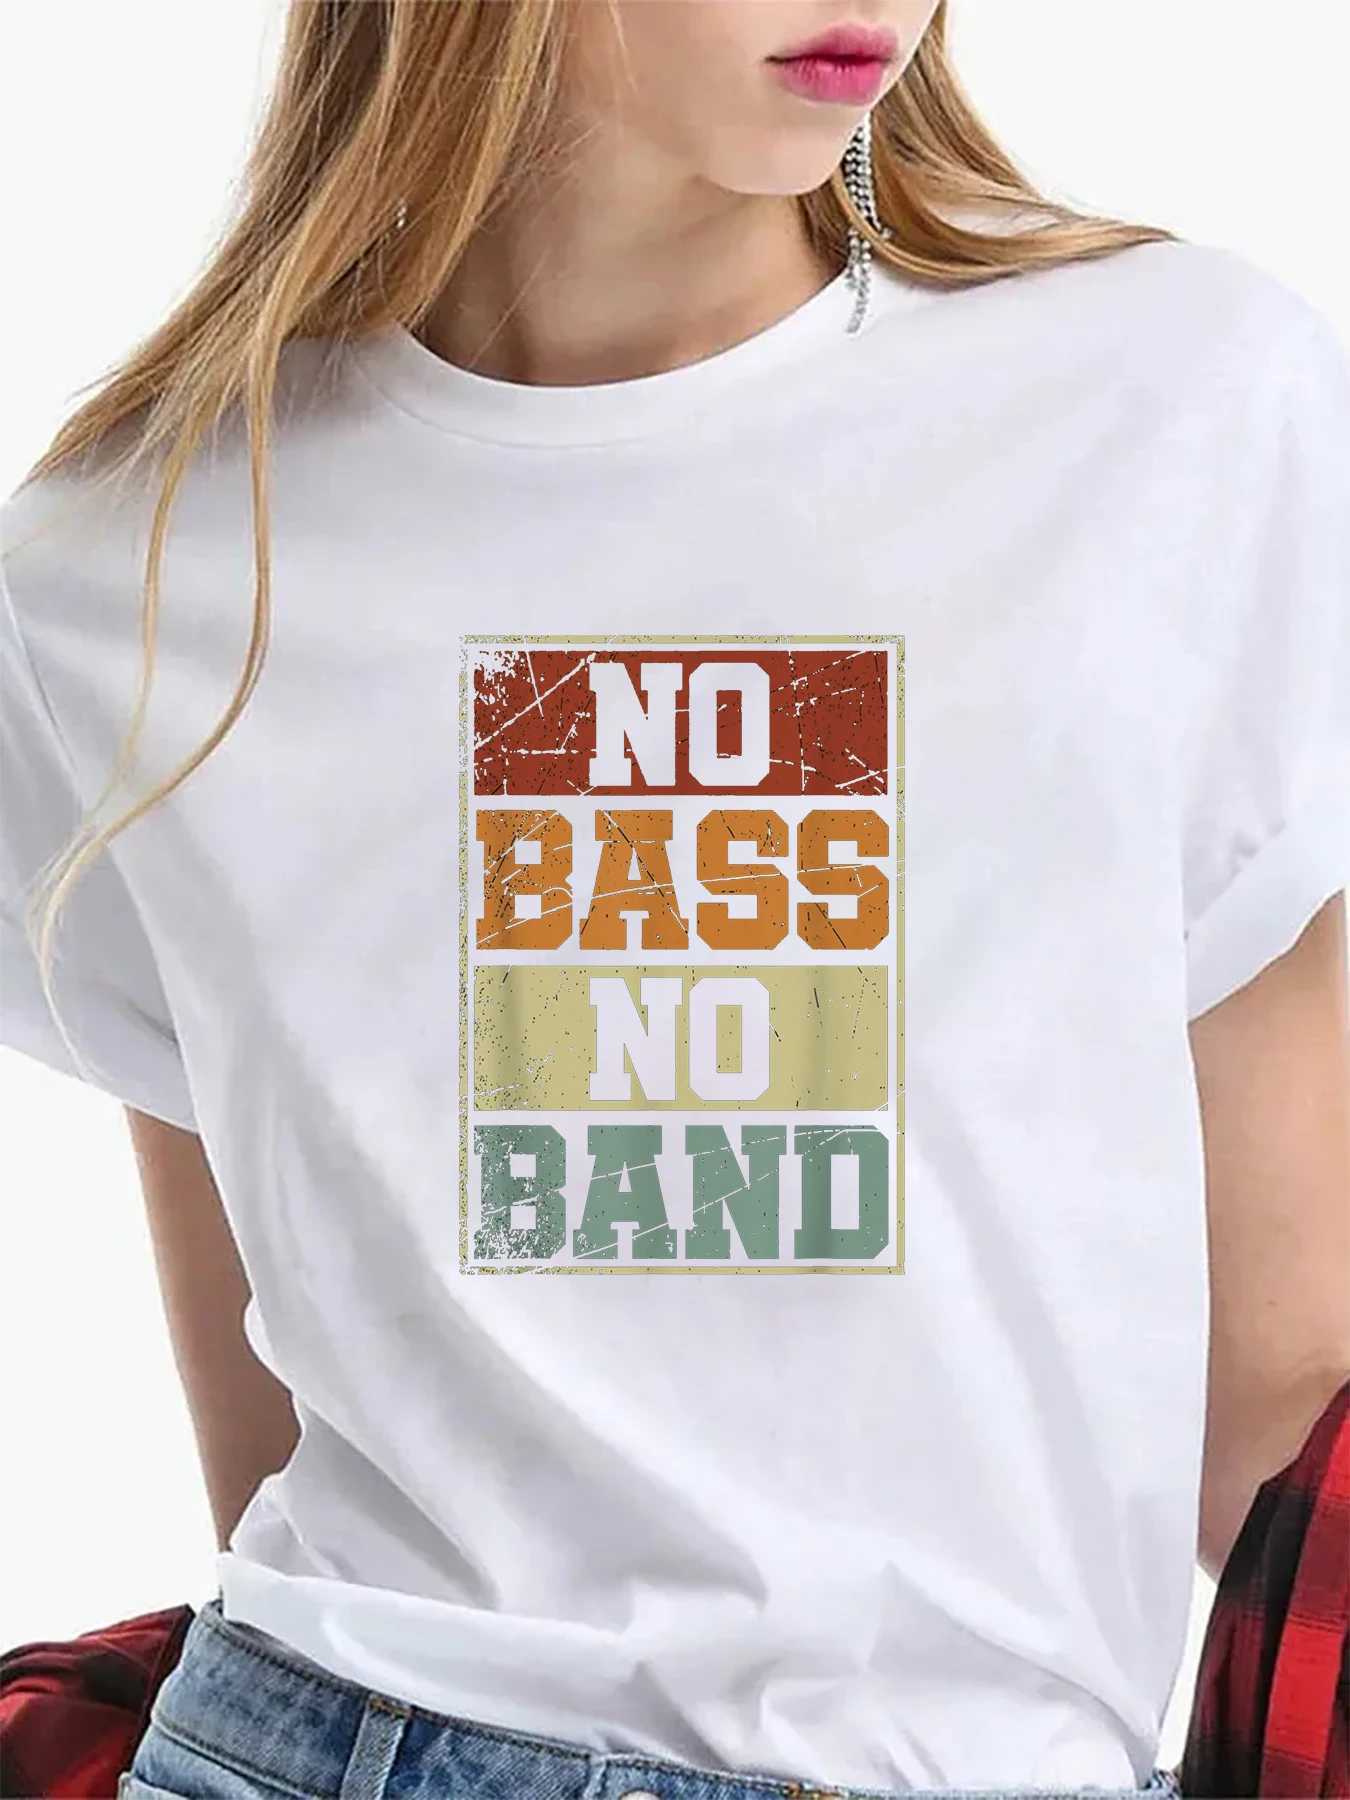 Kadın T-Shirt Kadın Bas Yok Band Bas Oyuncu Baskı T-Shirt Moda Kadın Takımı Kısa Sökülmüş Yuvarlak Boyun T-Shirt Büyük boy Tişört Y240506